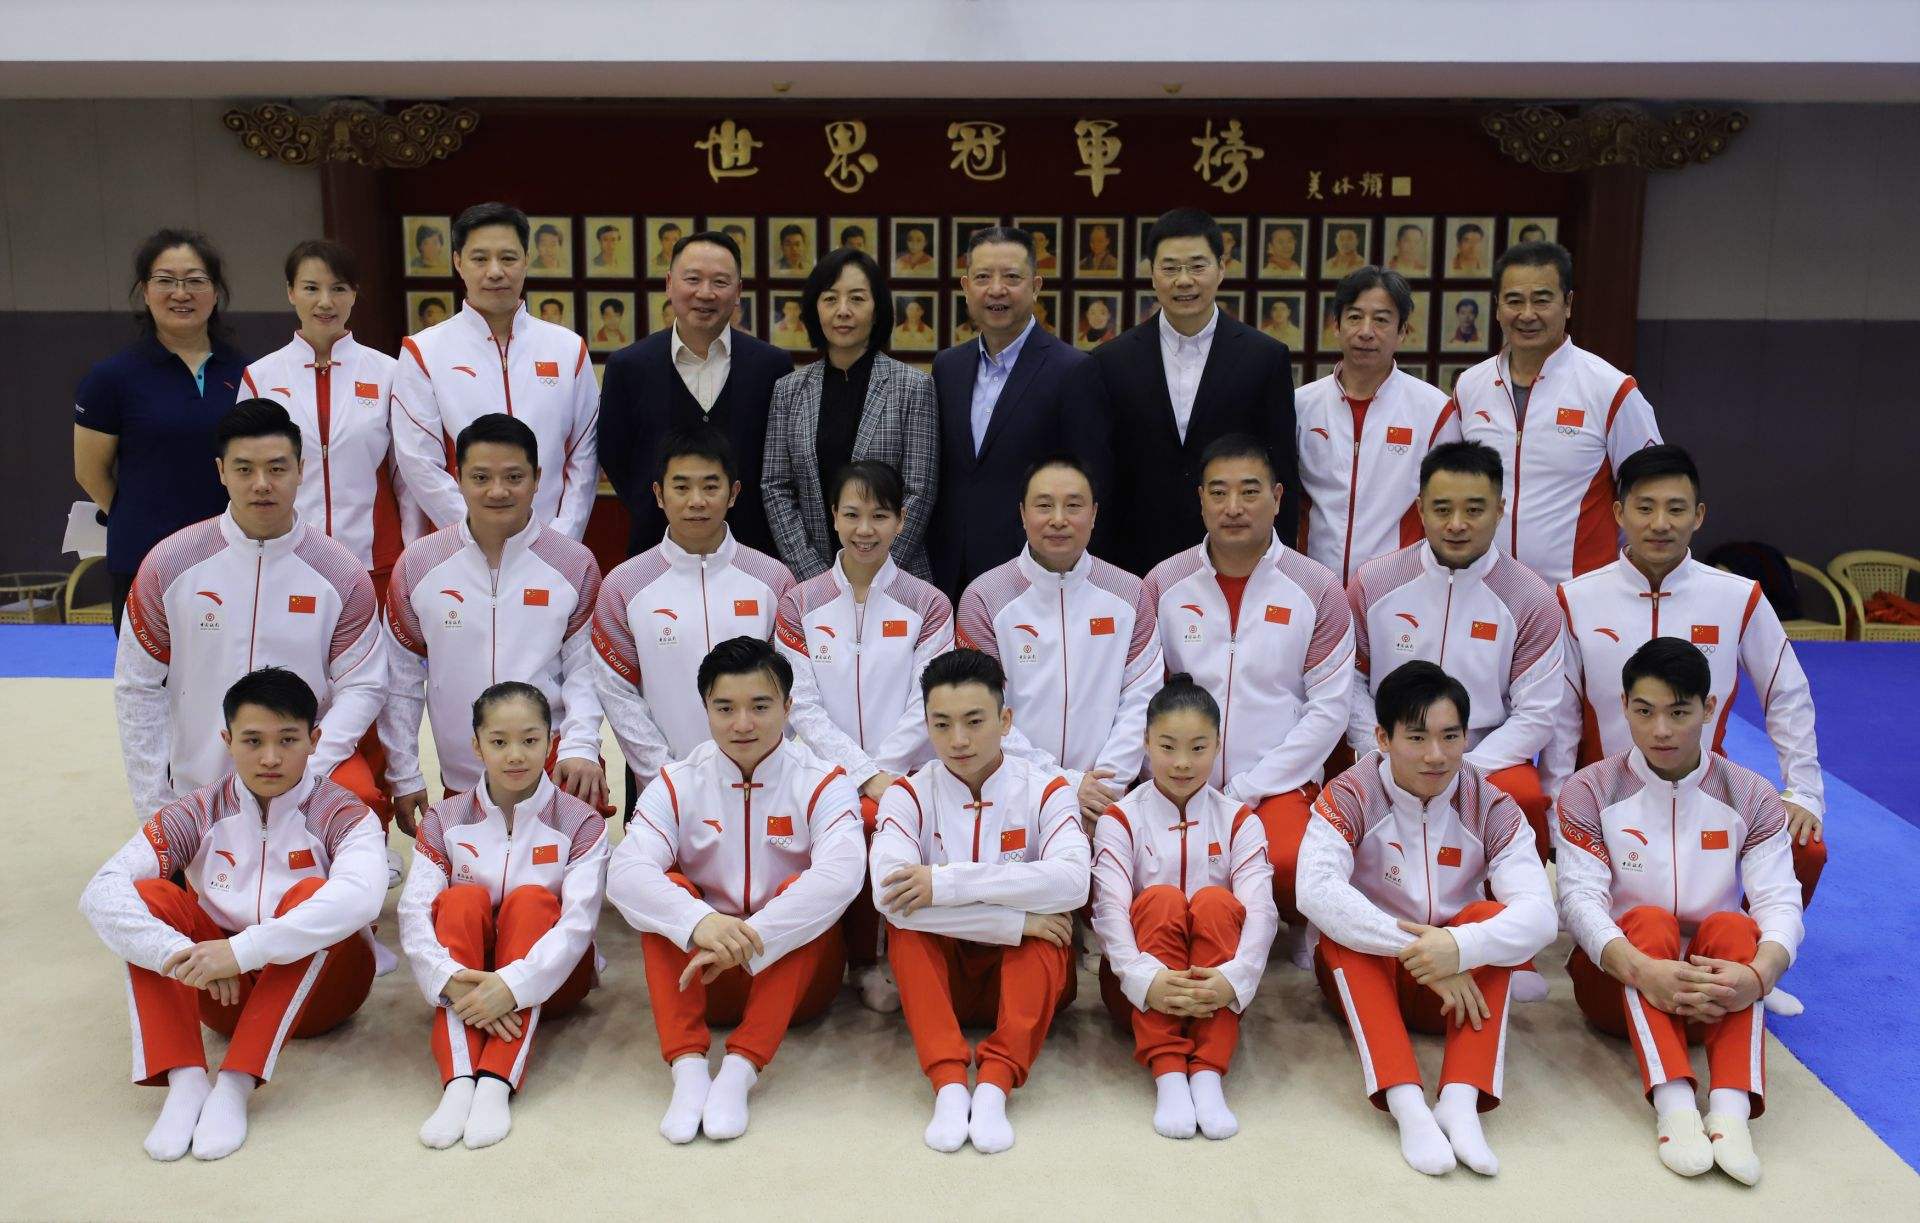 体操中男子组和女子组都有的项目(2022年第19届杭州亚运会比赛项目介绍之竞技体操)